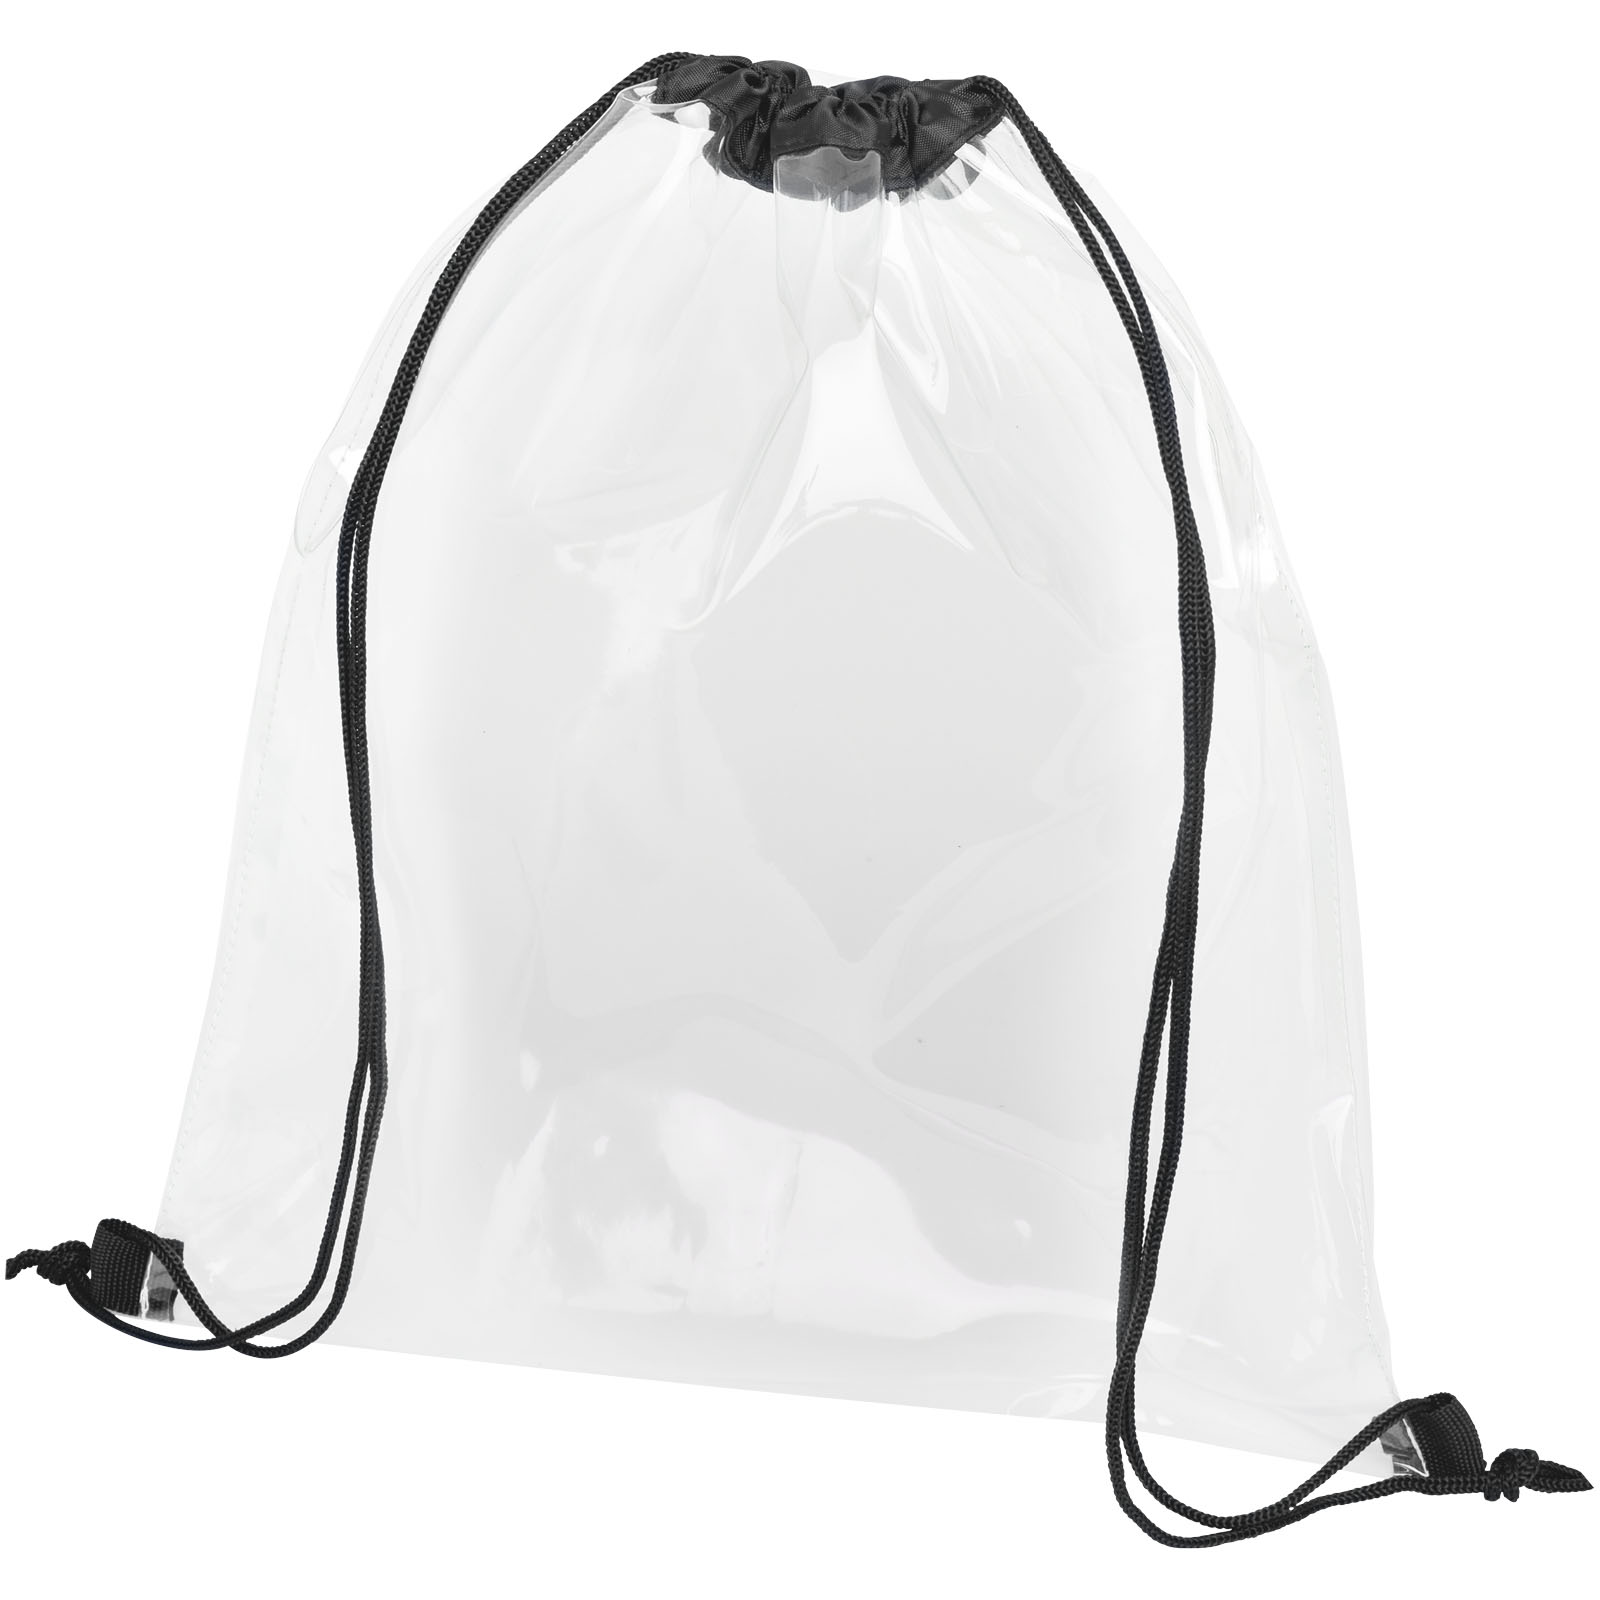 Advertising Drawstring Bags - Lancaster transparent drawstring bag 5L